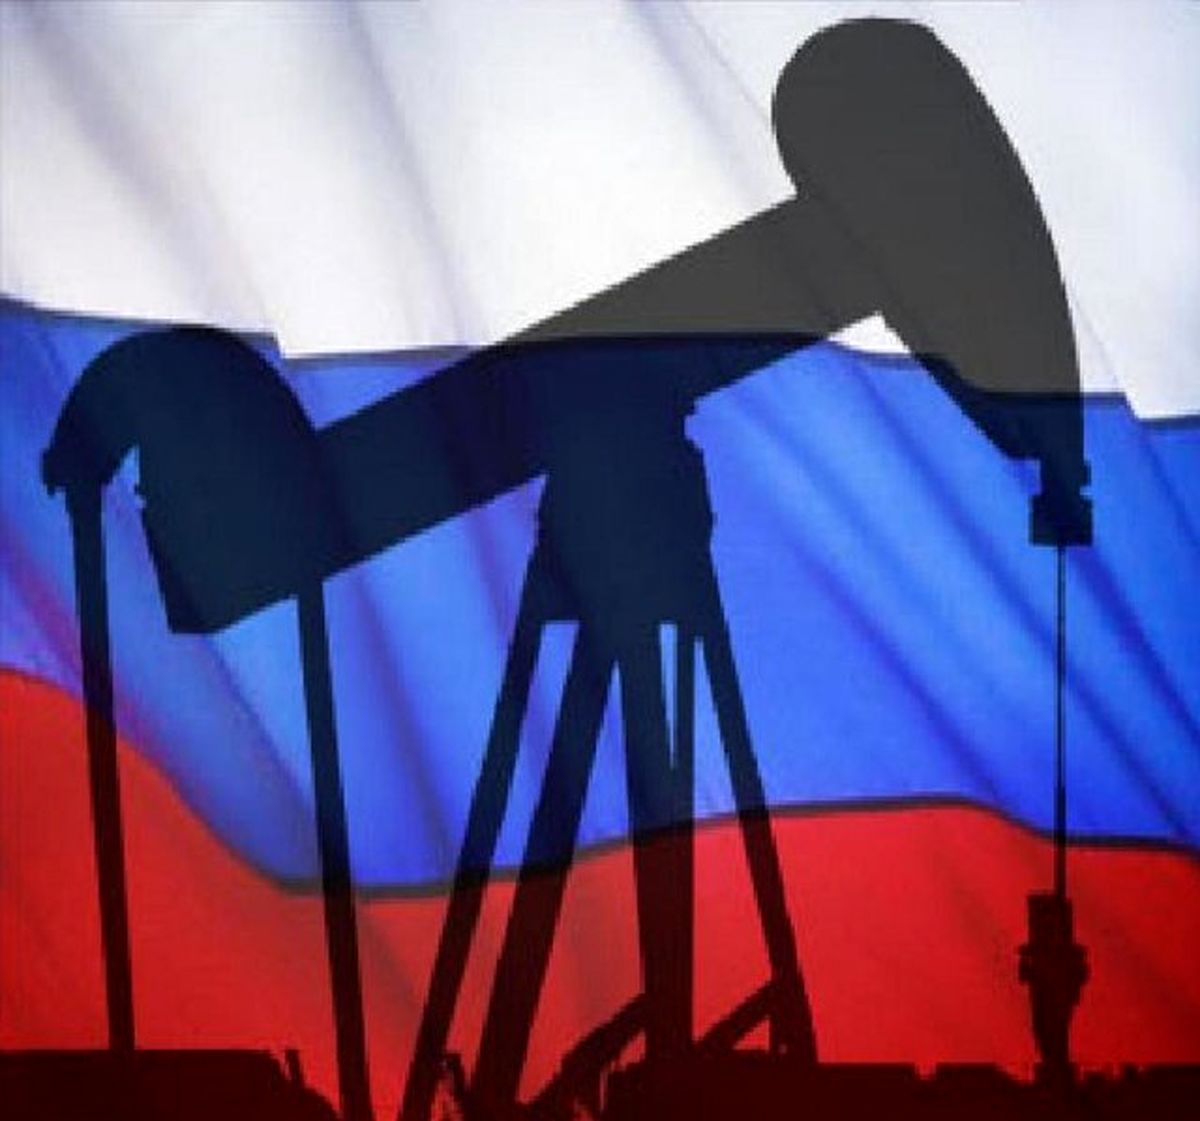 صادرکنندگان روسی یک میلیارد دلار پولدارتر شدند